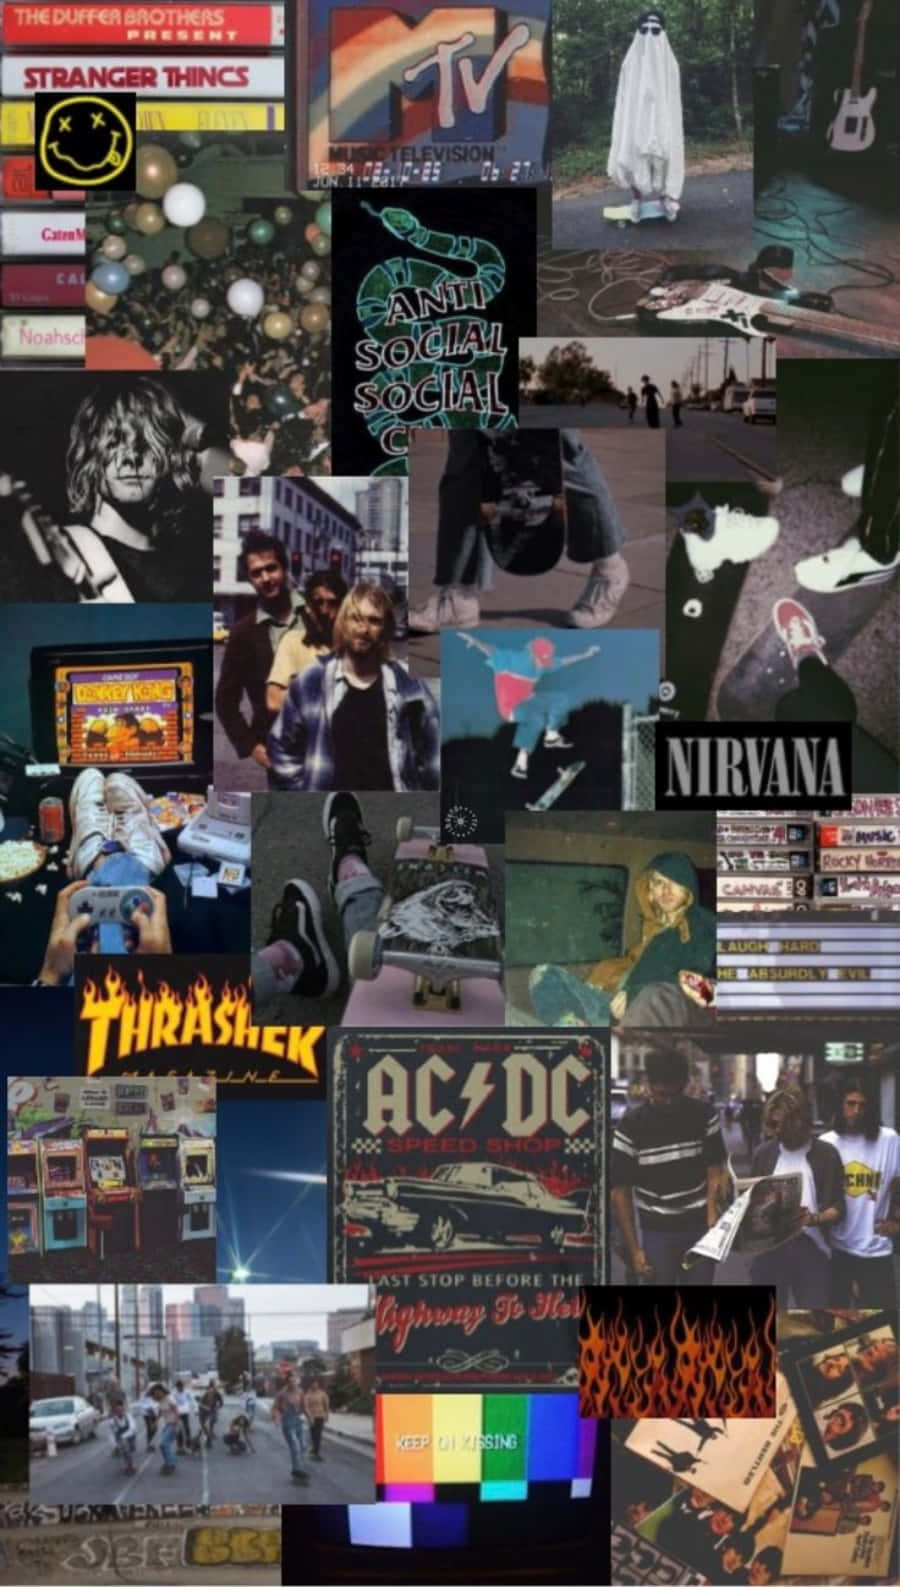 90s grunge background